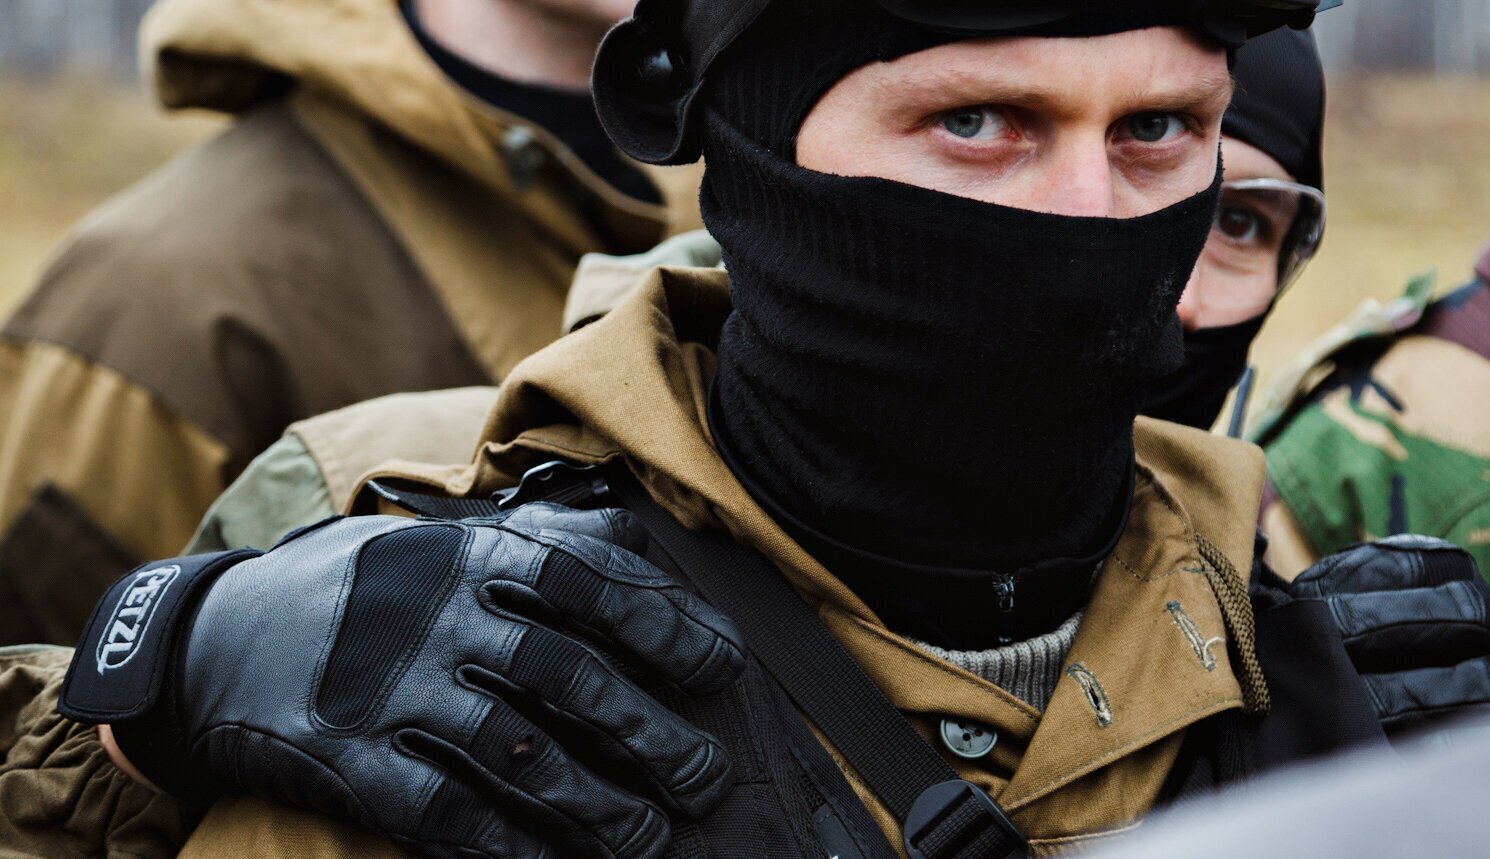 Фото в военной форме в маске